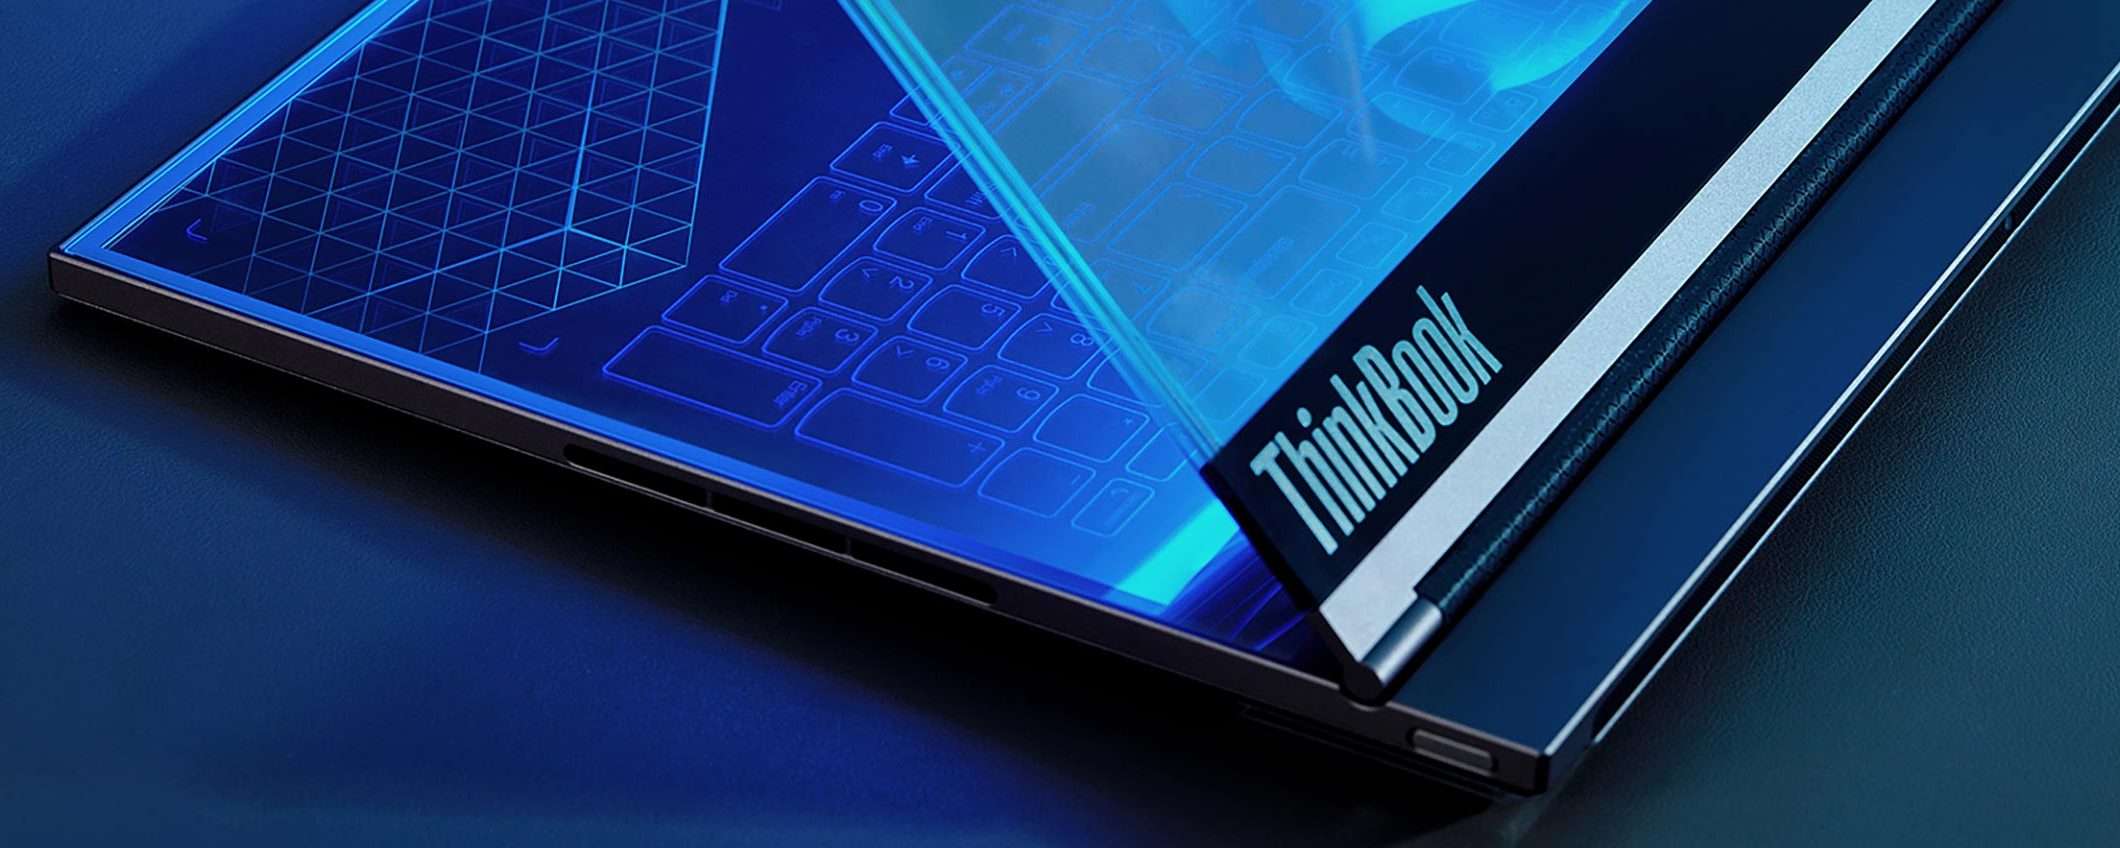 Il notebook Lenovo con display trasparente è una realtà